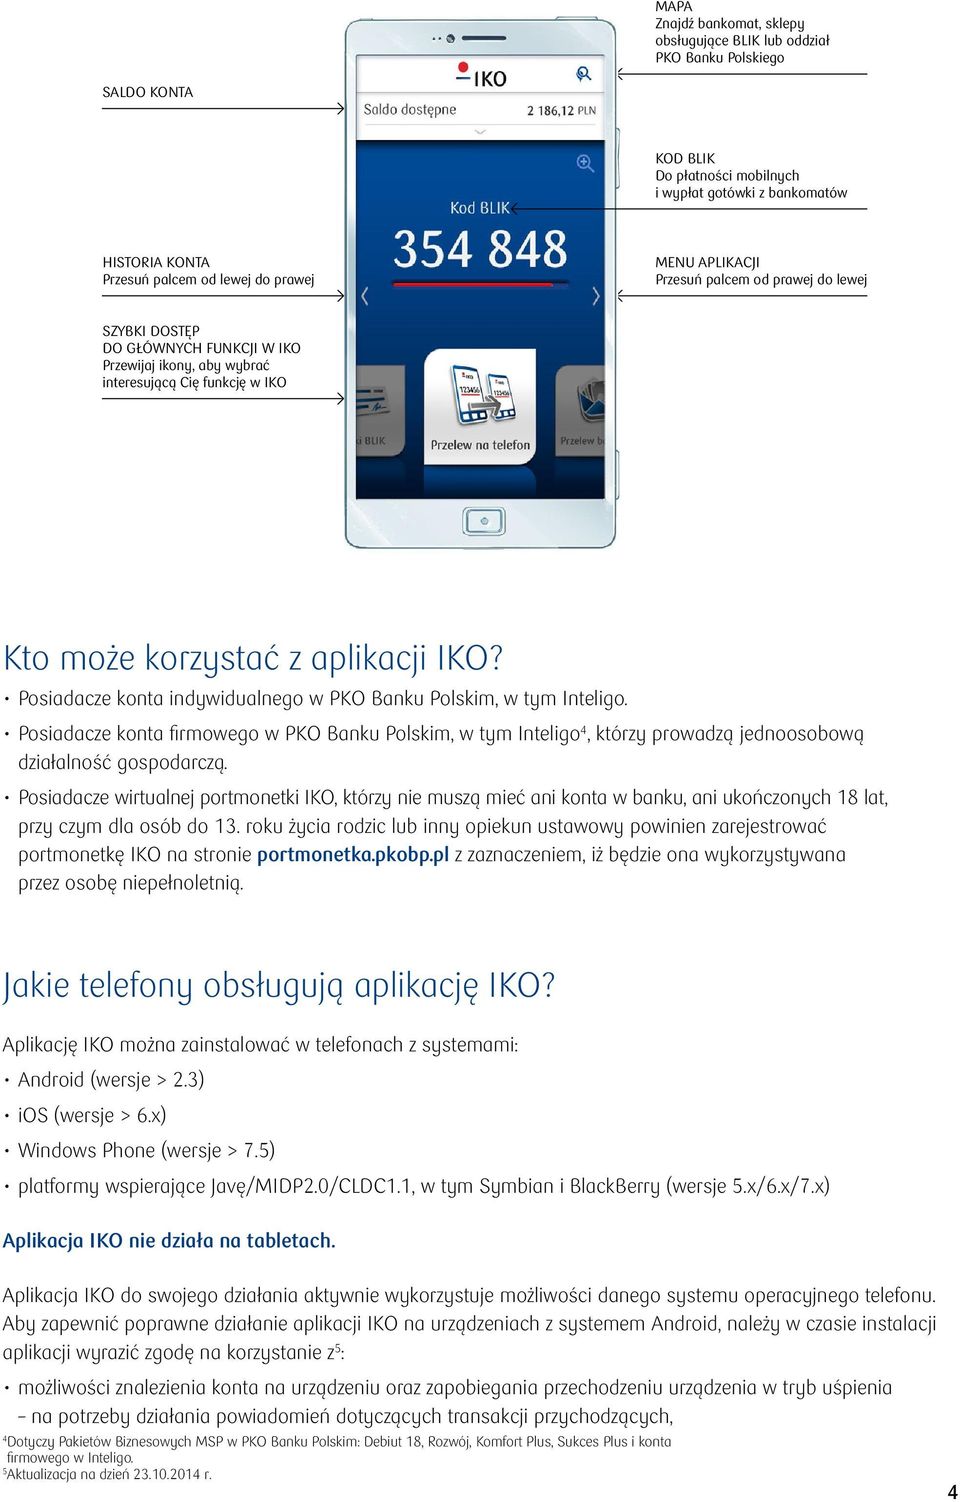 Posiadacze konta indywidualnego w PKO Banku Polskim, w tym Inteligo. Posiadacze konta firmowego w PKO Banku Polskim, w tym Inteligo 4, którzy prowadzą jednoosobową działalność gospodarczą.